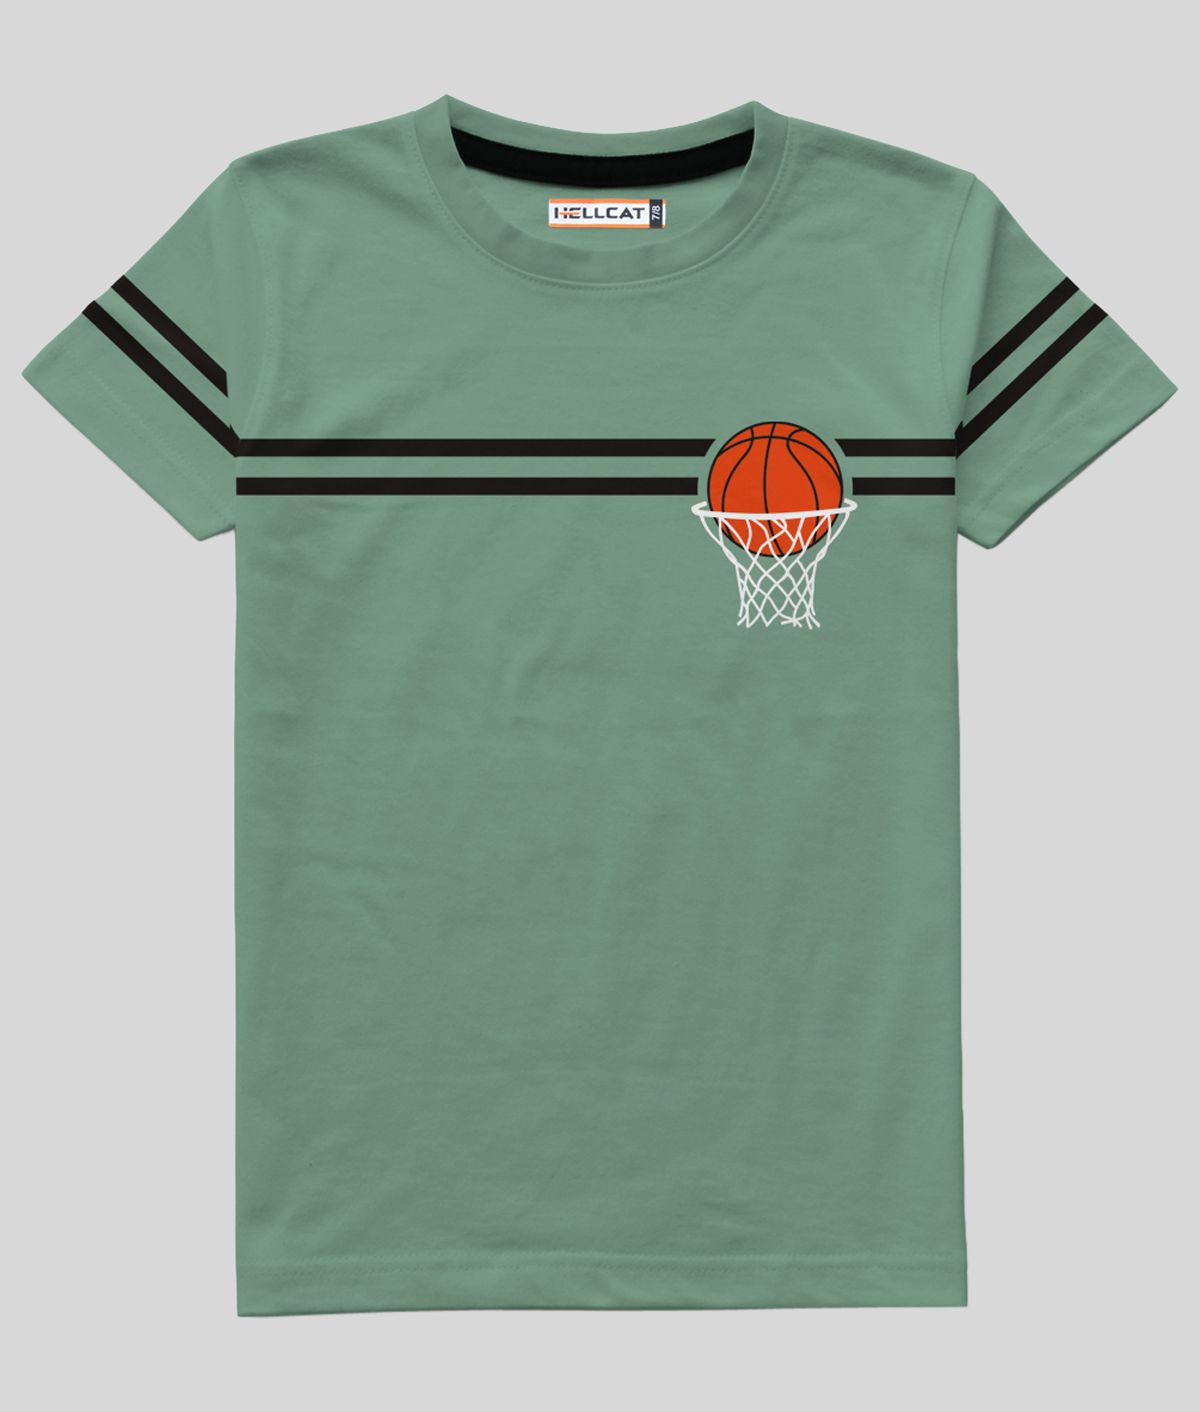     			HELLCAT - Sea Green Cotton Blend Boy's T-Shirt ( Pack of 1 )